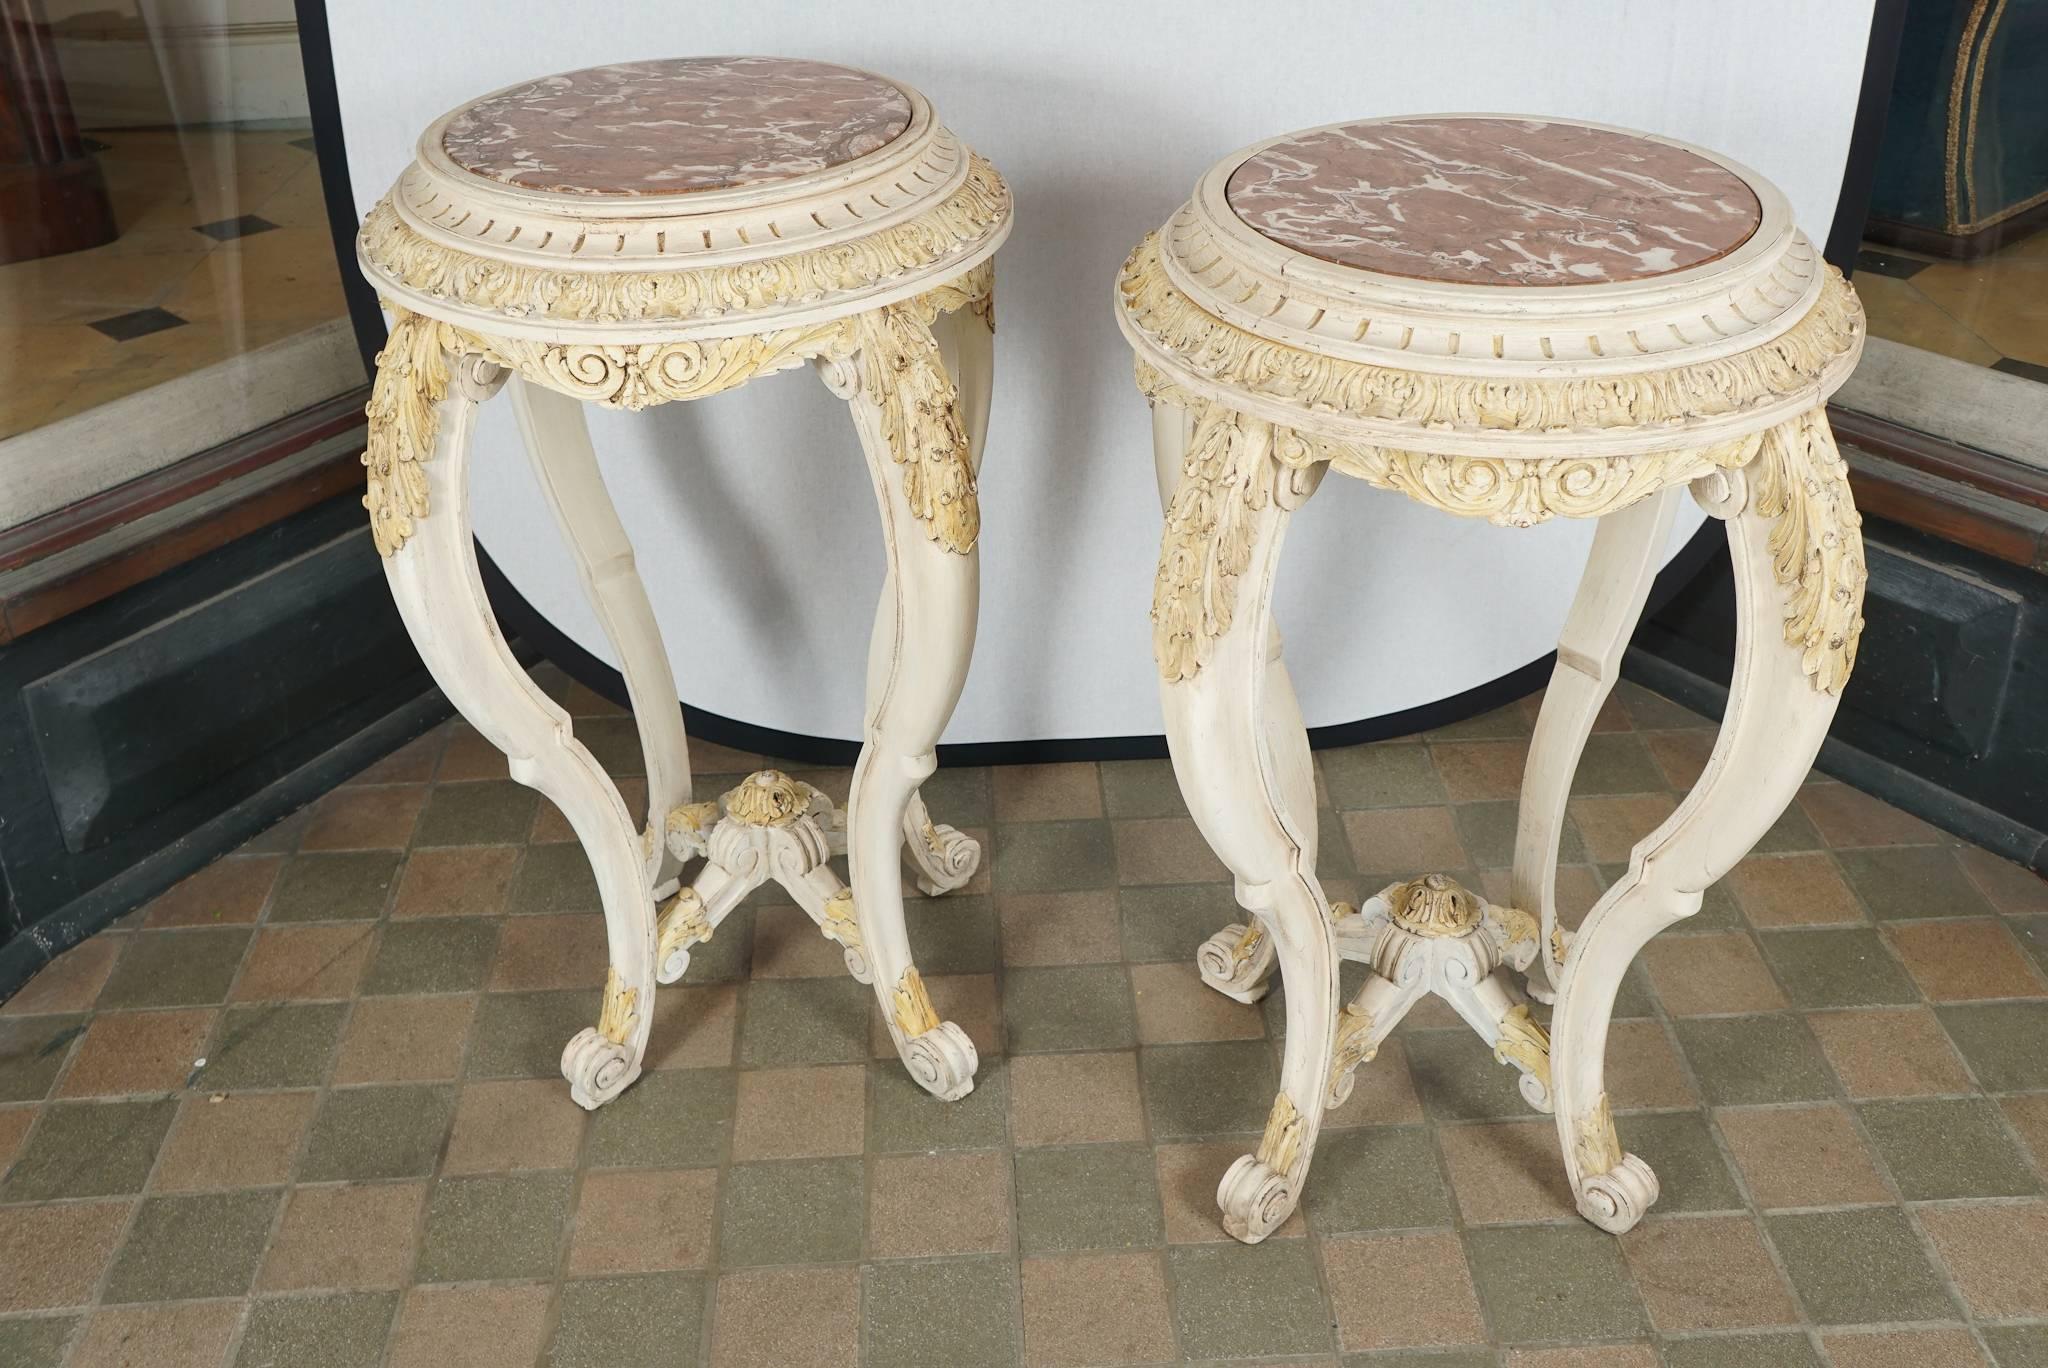 Das Tischpaar wurde zwischen 1890 und 1900 in Frankreich hergestellt. Das Paar ist im Stil Ludwigs XV. entworfen und hat umfangreiche handgeschnitzte dekorative Elemente, darunter Akanthusblätter, Kannelüren und Rosetten, die sich alle von dem